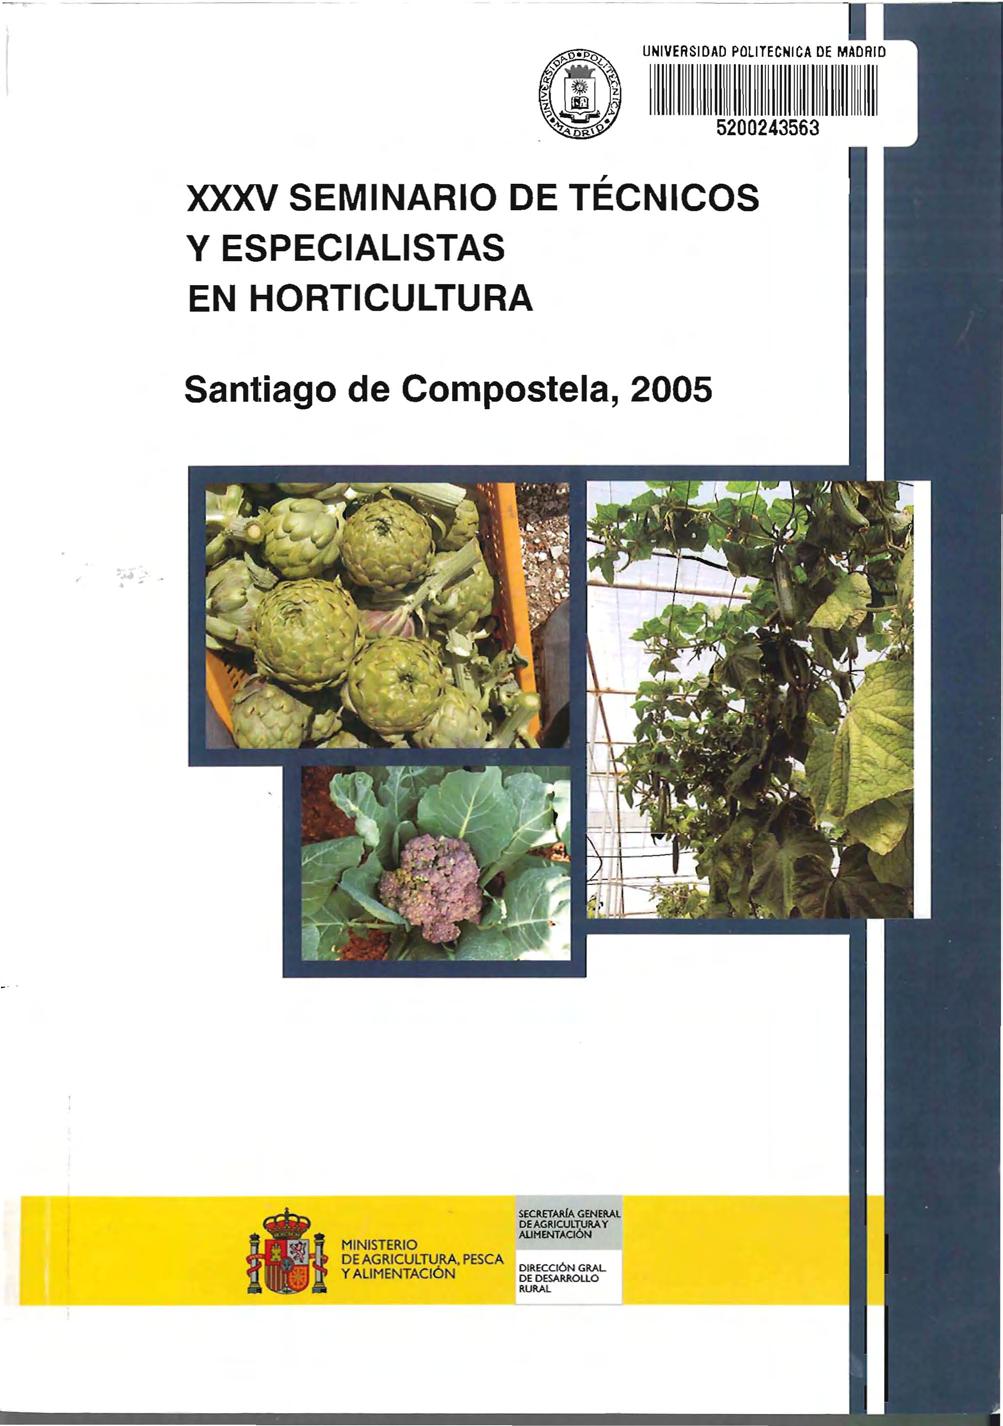 xxxv SEMINARIO DE TÉCNICOS Y ESPECIALISTAS EN HORTICULTURA Santiago de Compostela, 2005!